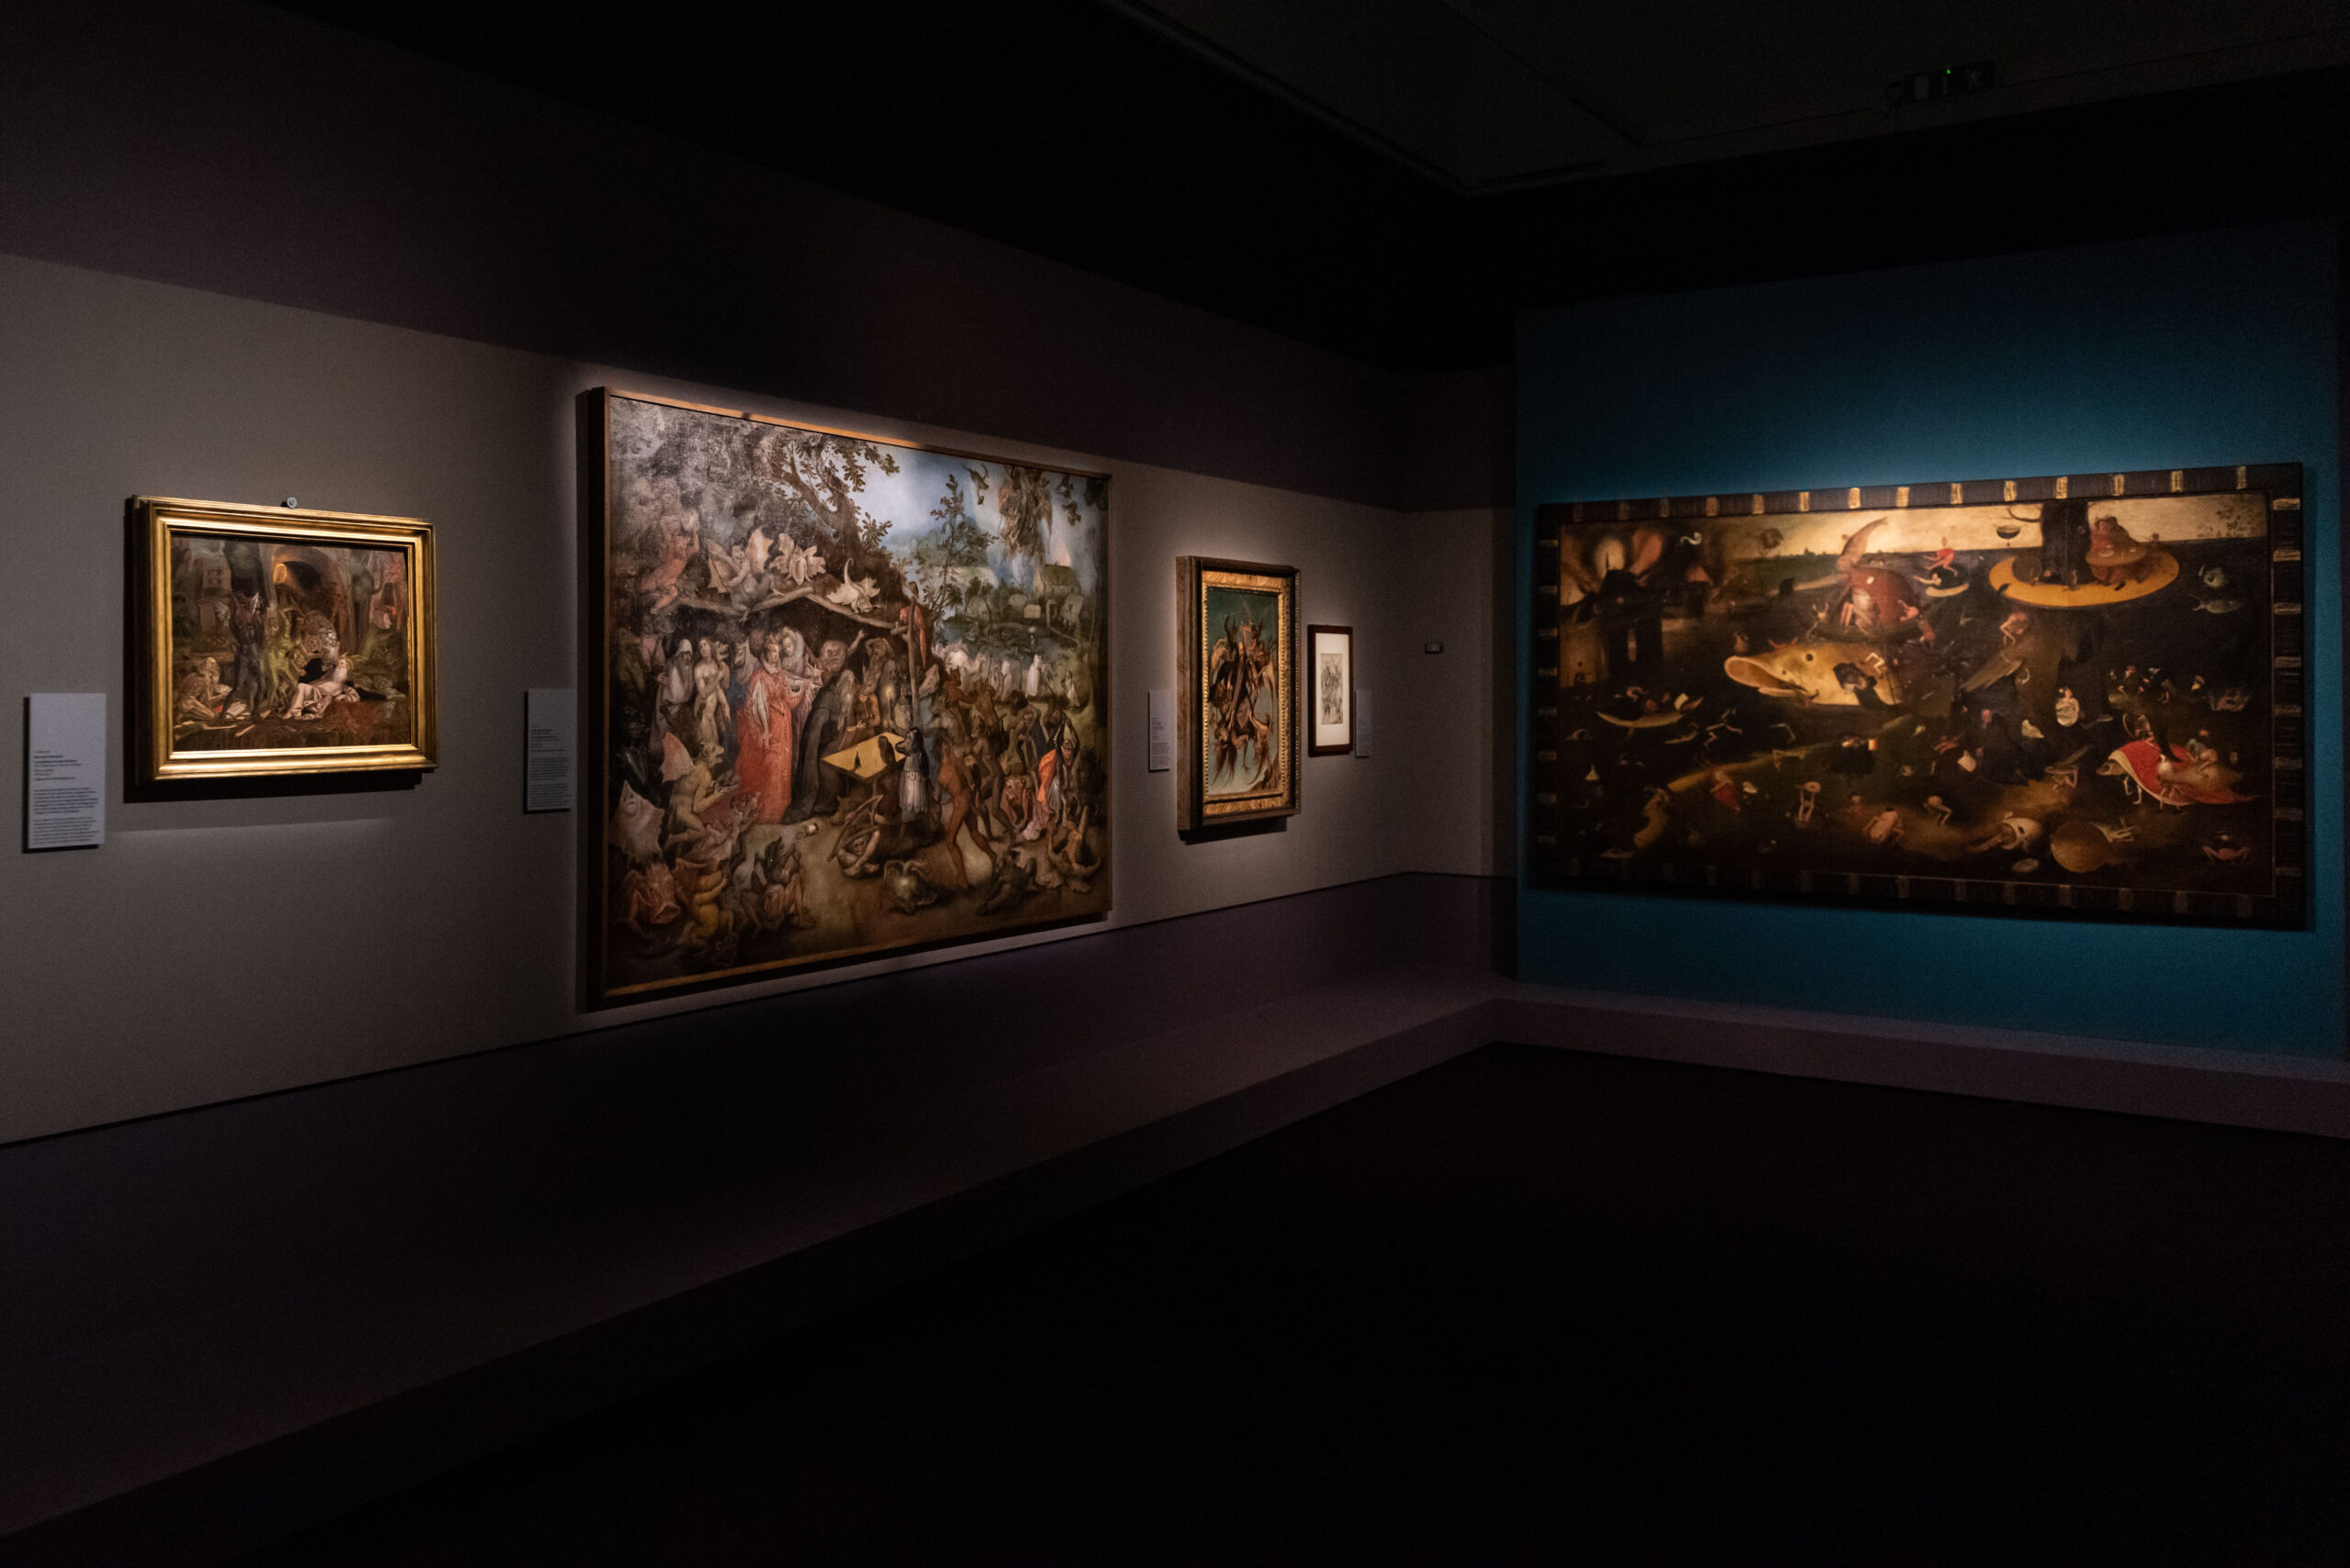 Mostra a palazzo reale "Bosch e un altro Rinascimento", articolo su Beyond the Magazine